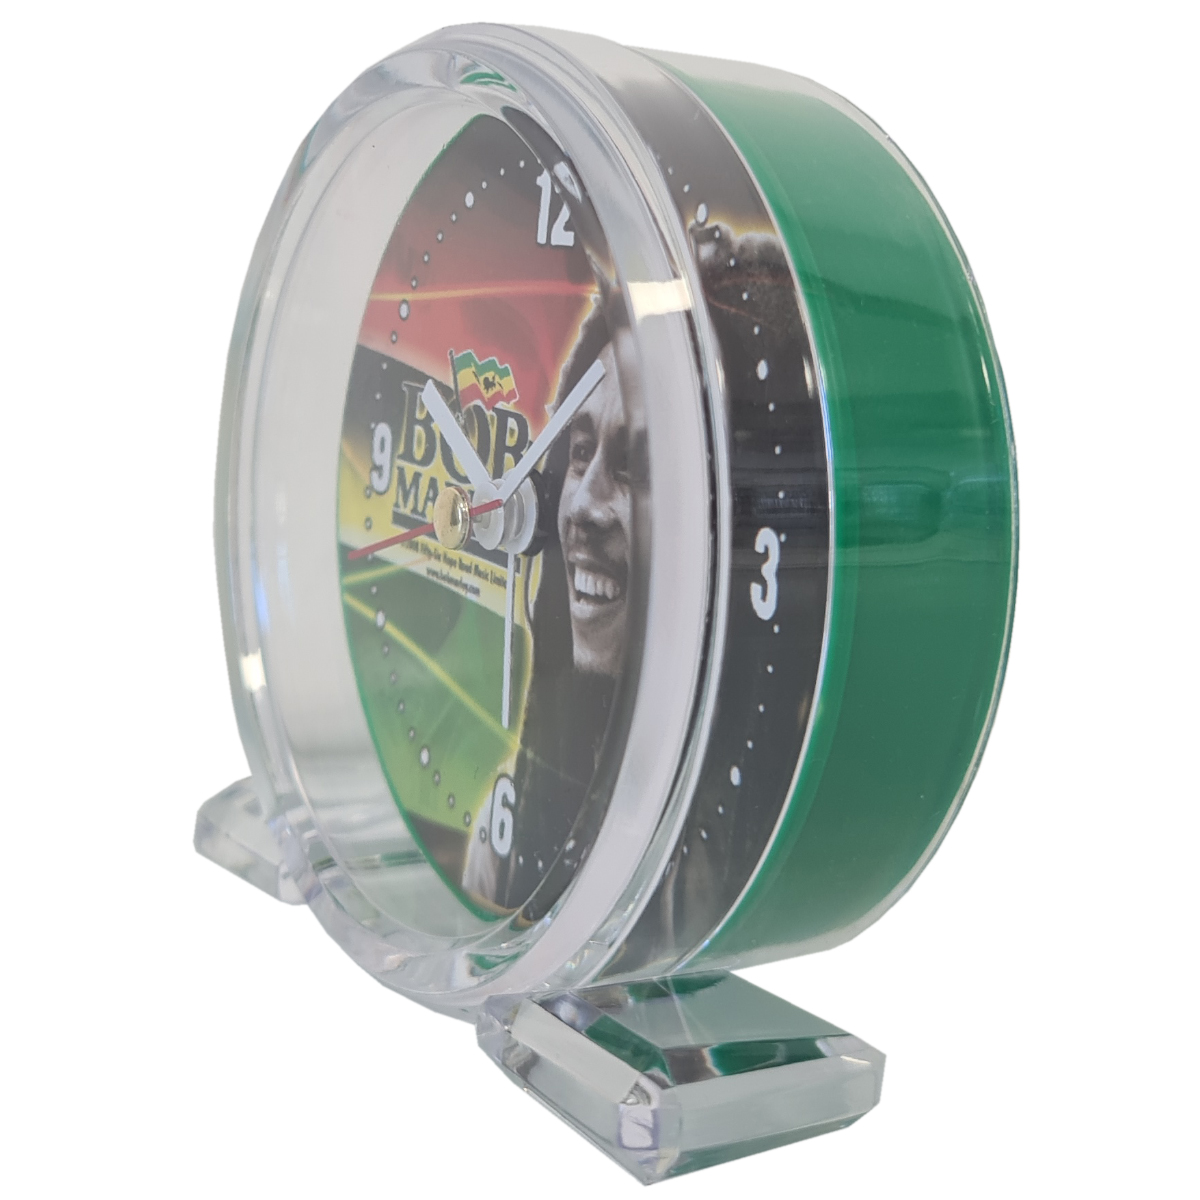 Bob Marley Green alarm clock